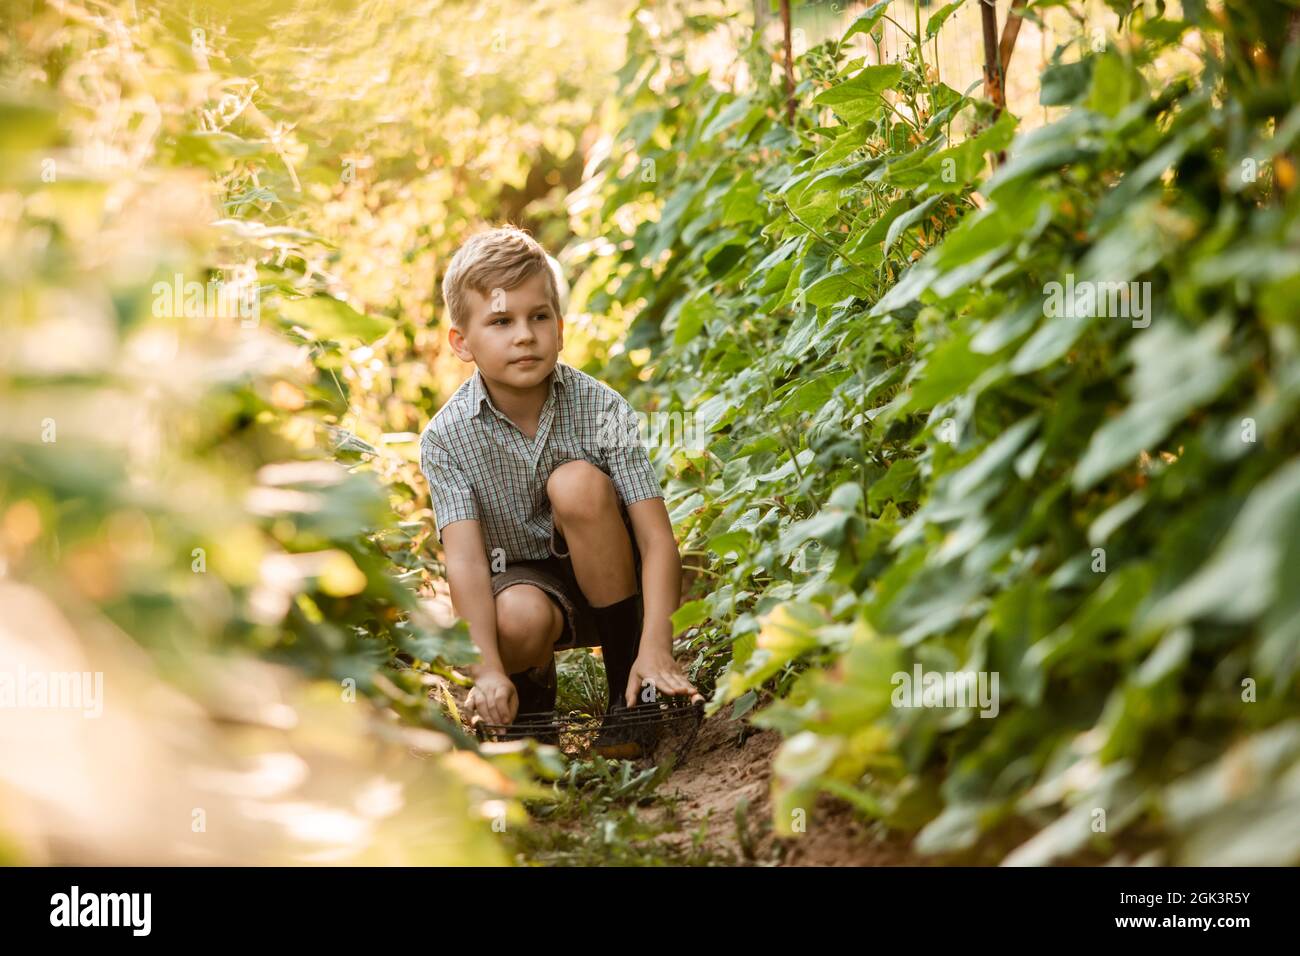 Der kleine Junge steht mit einem Korb im Gartenbett Stockfoto